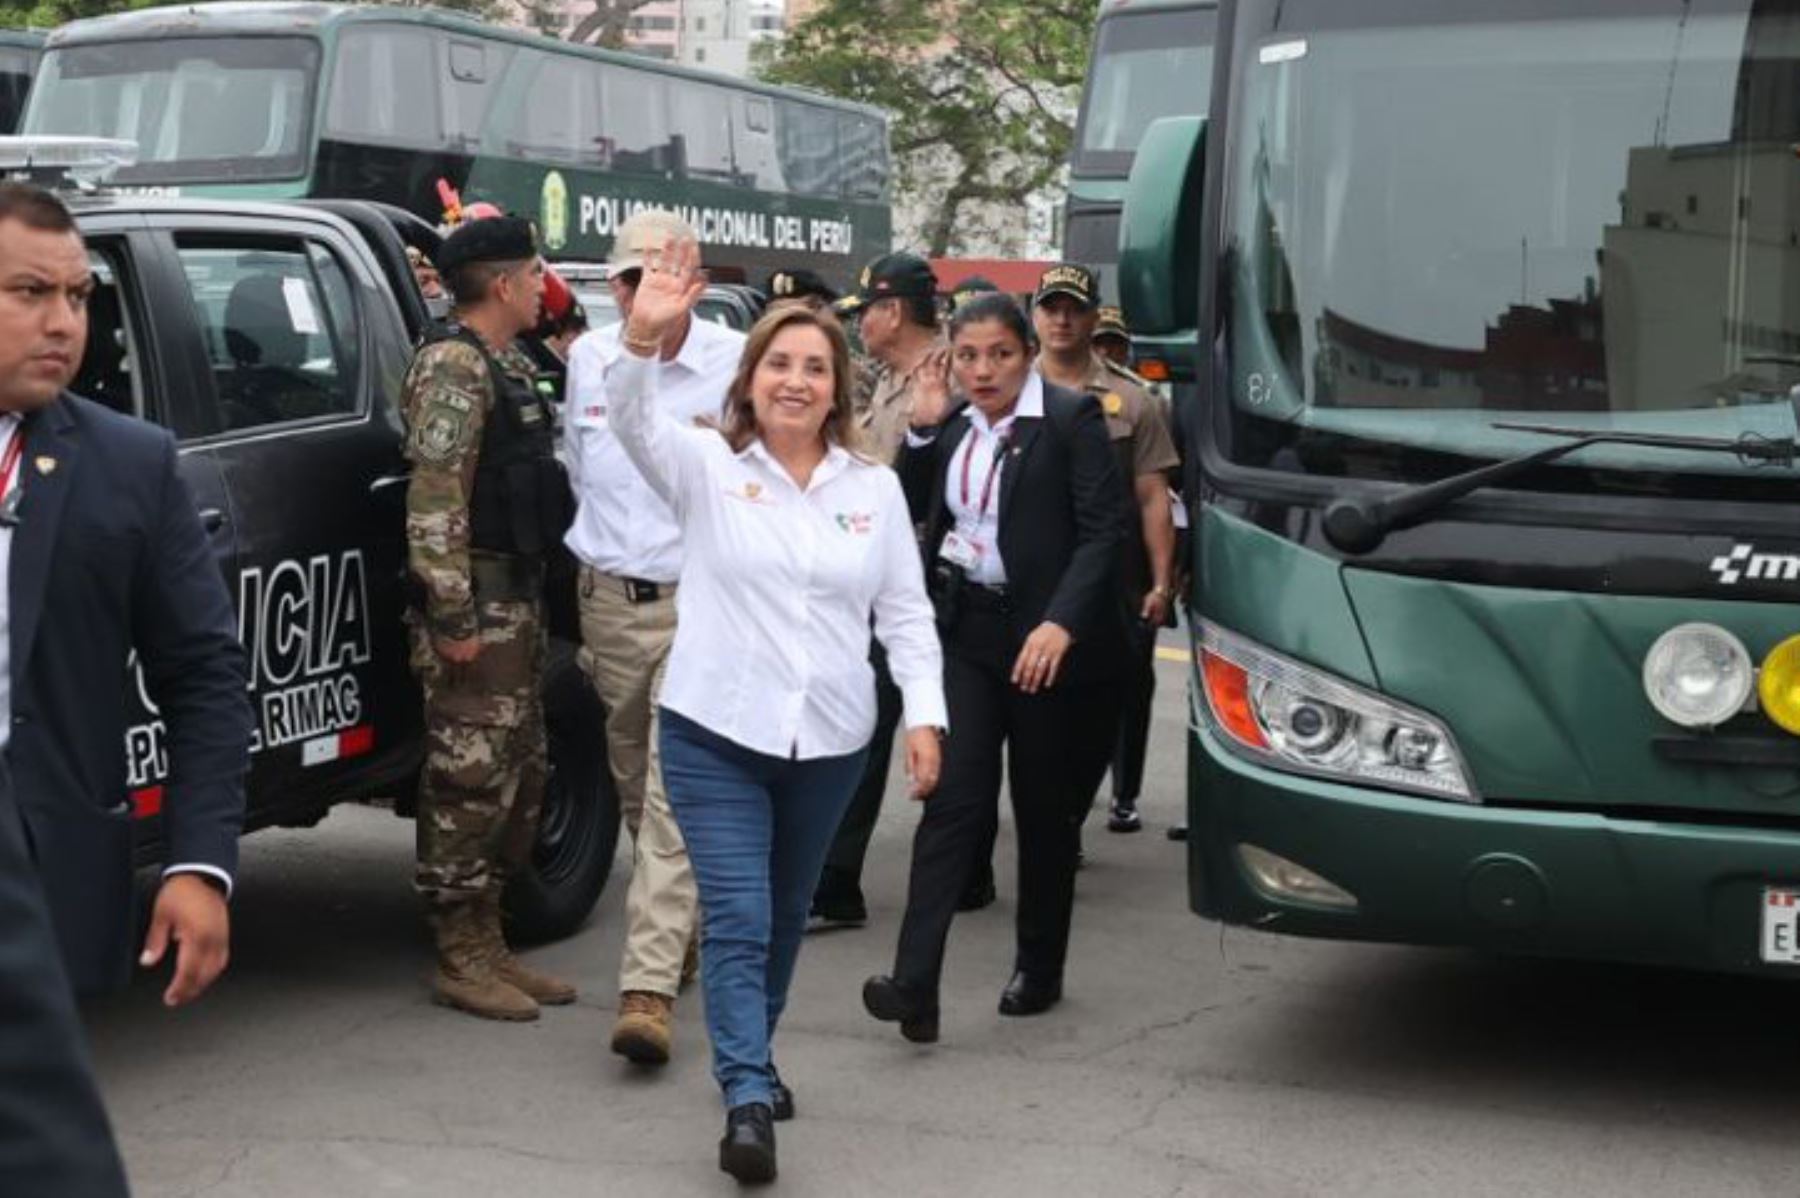 La mandataria Dina Boluarte participa en la ceremonia de entrega de vehículos para la Policía, que ayudarán a fortalecer las acciones contra la delincuencia en Lima y Callao. Foto: ANDINA/ Juan Carlos Guzmán